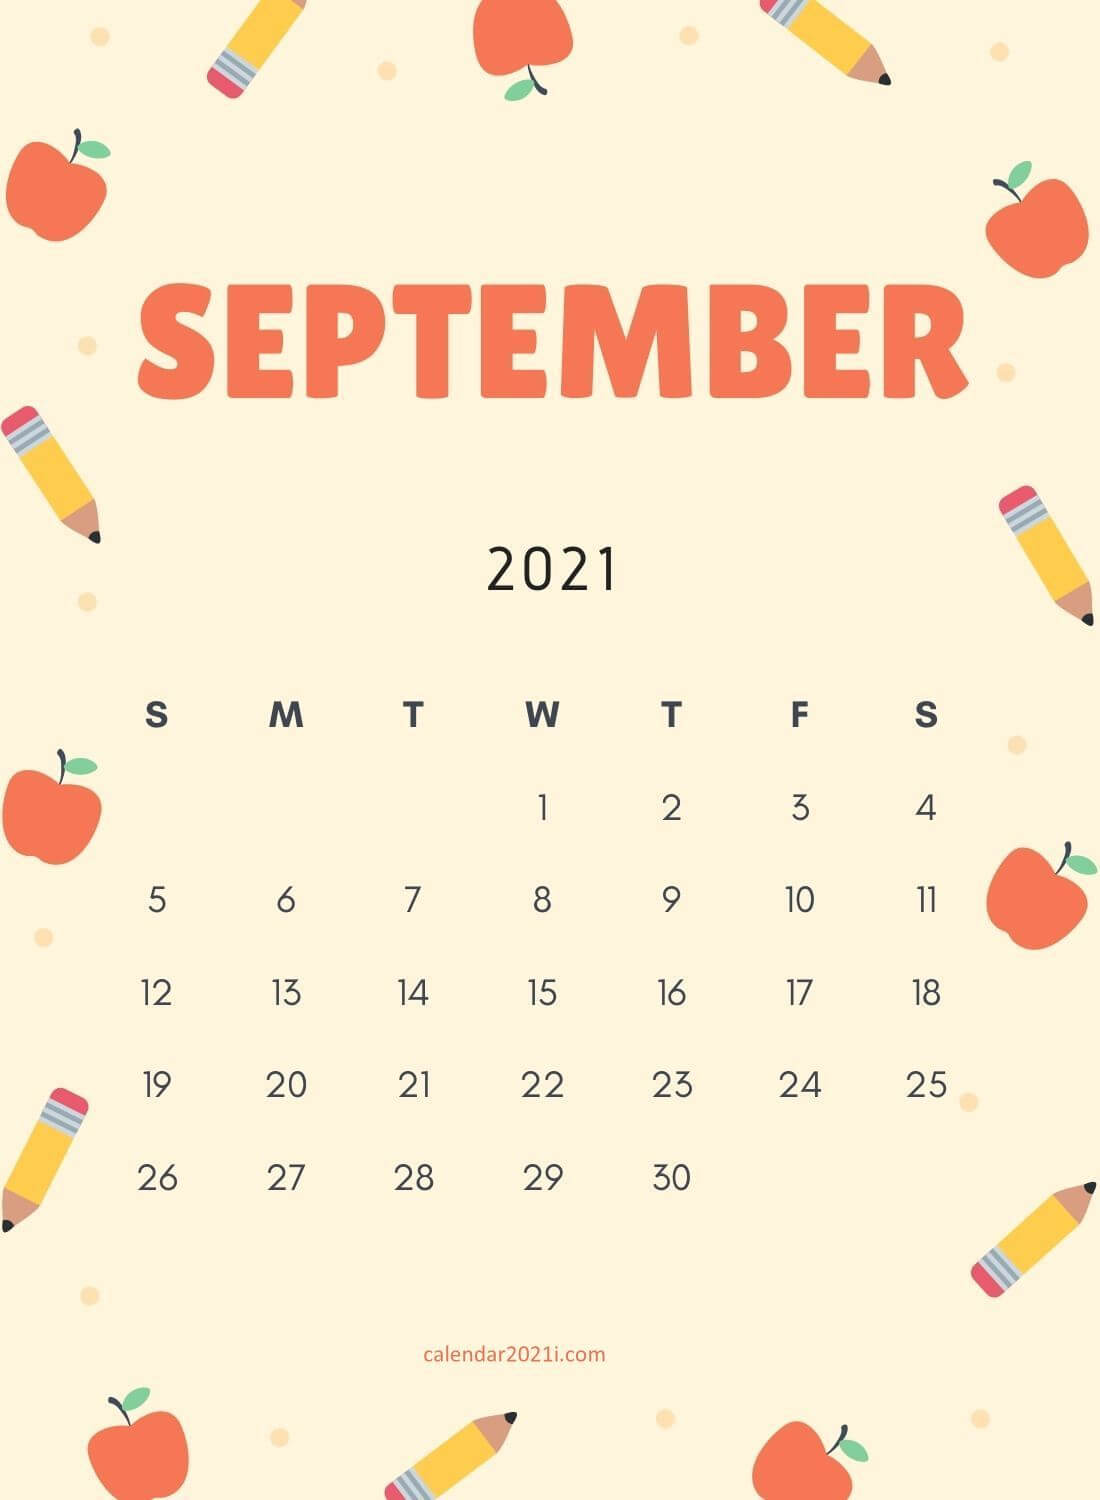 September 2021 iPhone Calendar Wallpaper